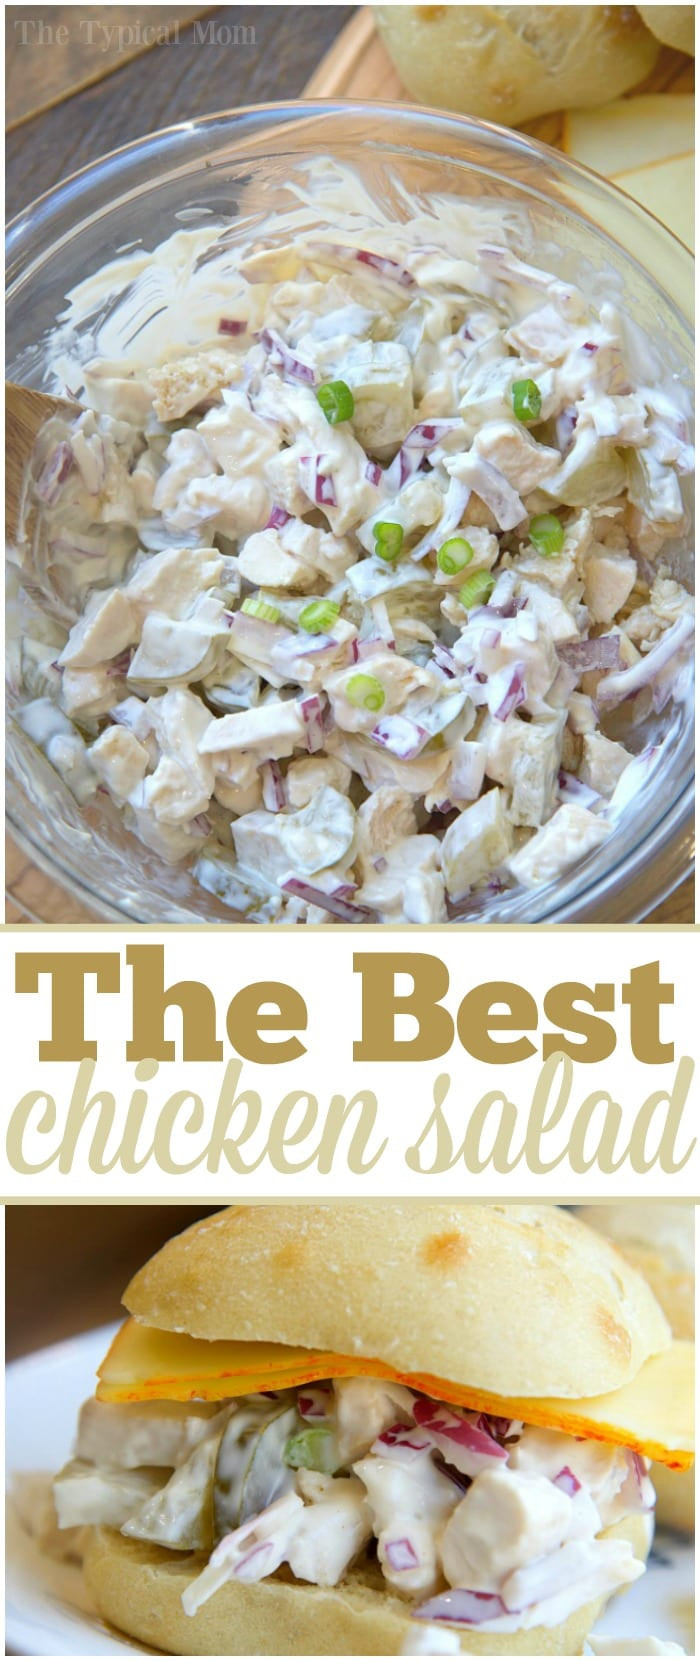 Simple Chicken Salad Sandwich Recipe
 Easy Chicken Salad Sandwich Recipe · The Typical Mom